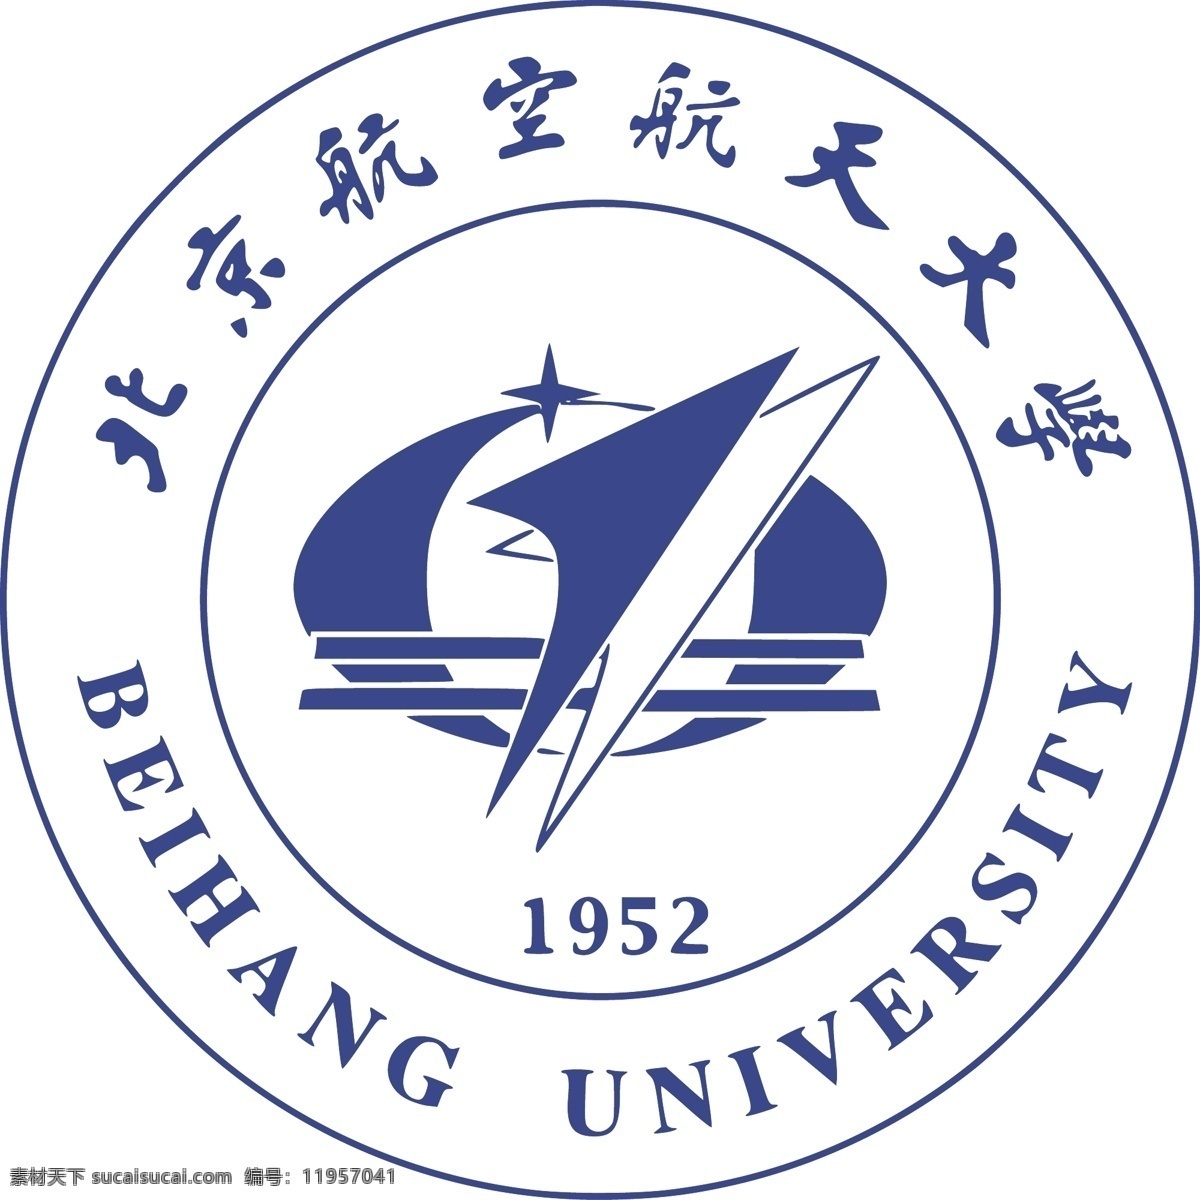 北京航空航天大学 logo 北京 大学 航空 航天 标志 标志图标 企业